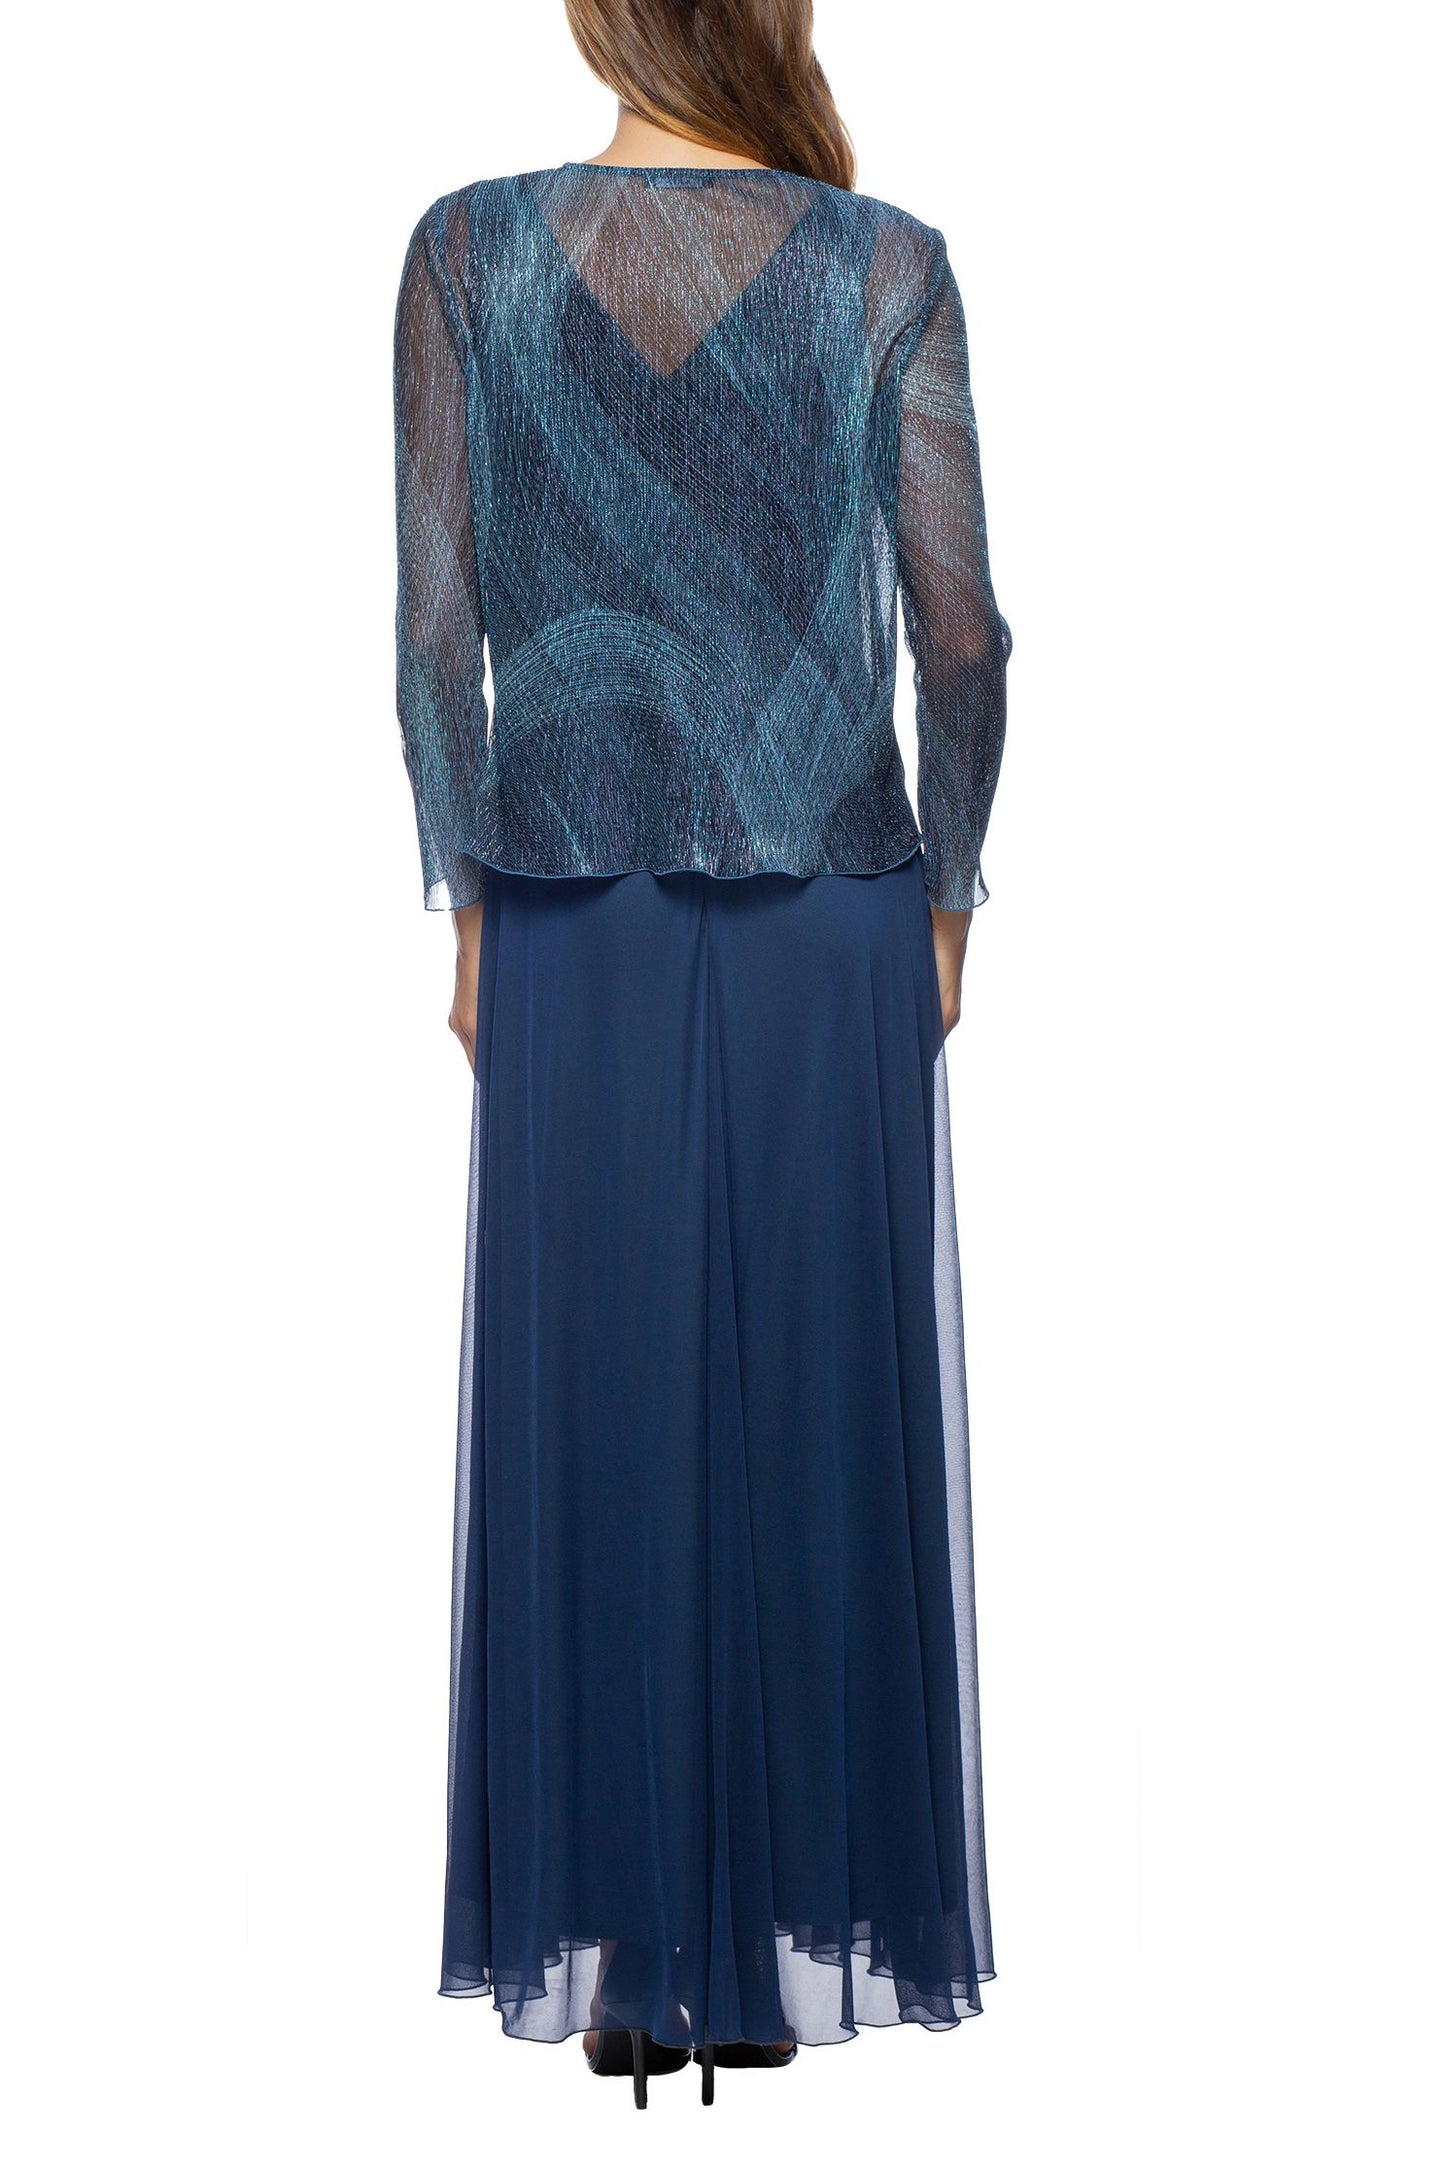 Marina Chiffon Dress with Matching Long Sleeve Metallic Jacket (2pc Set)